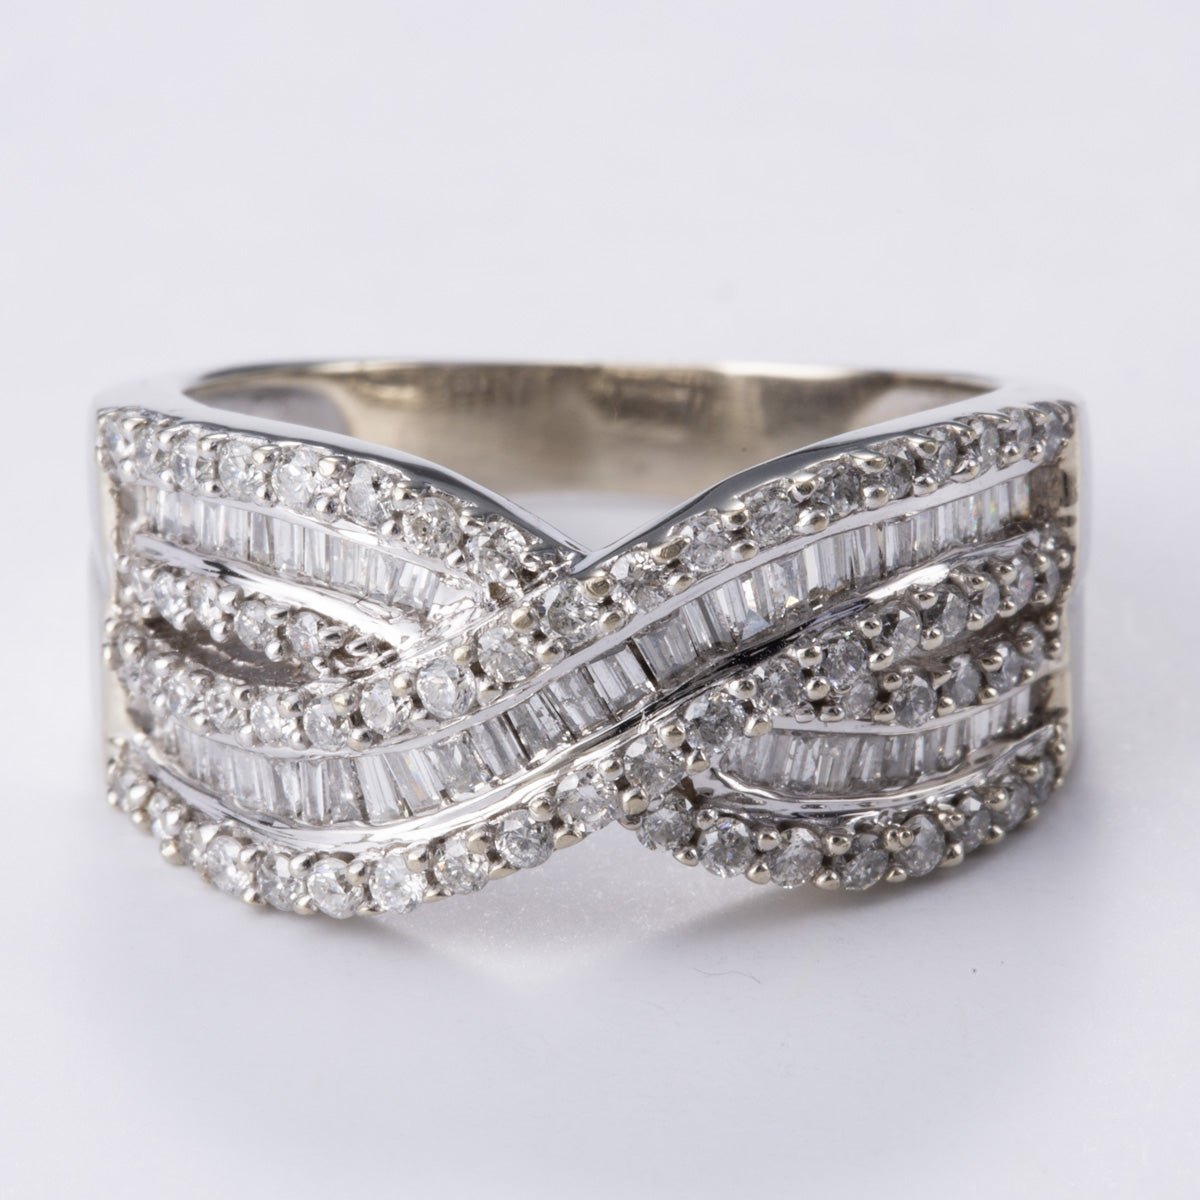 10k White Gold Diamond Ring | 1.00ctw | Sz 7.75 - 100 Ways